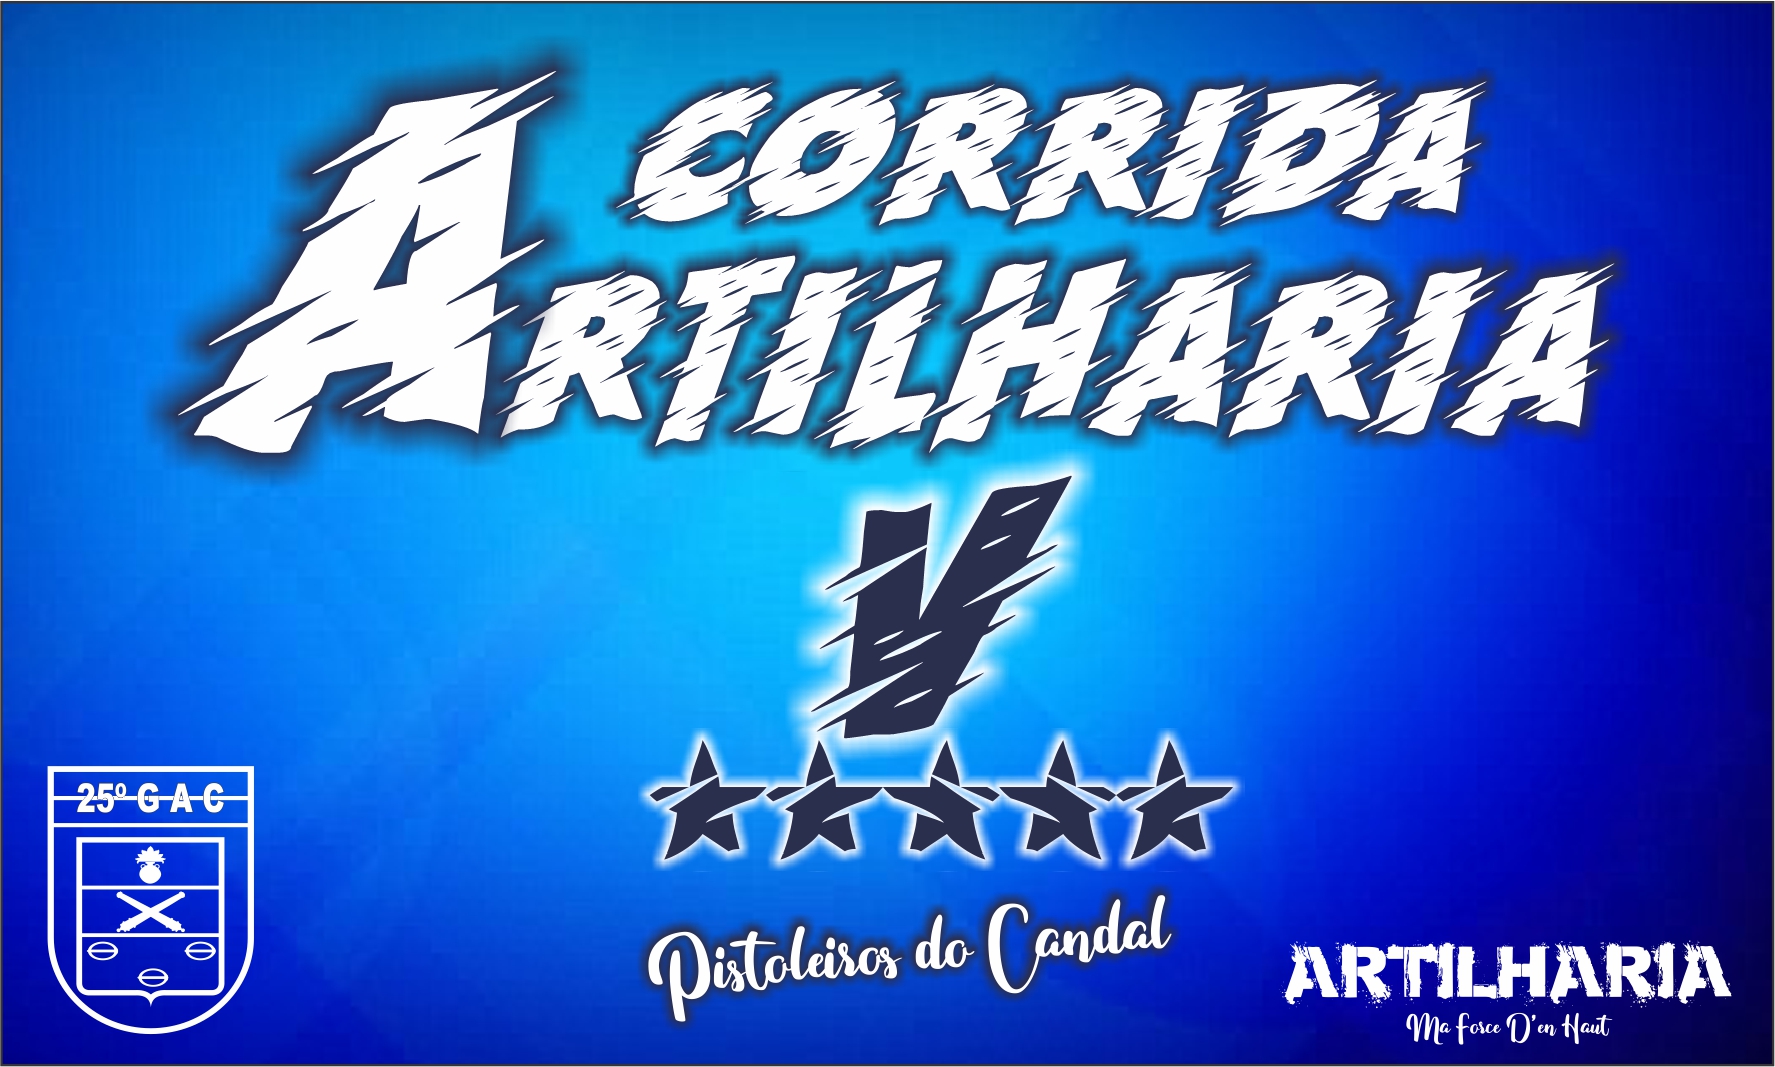 CORRIDA DA ARTILHARIA V 